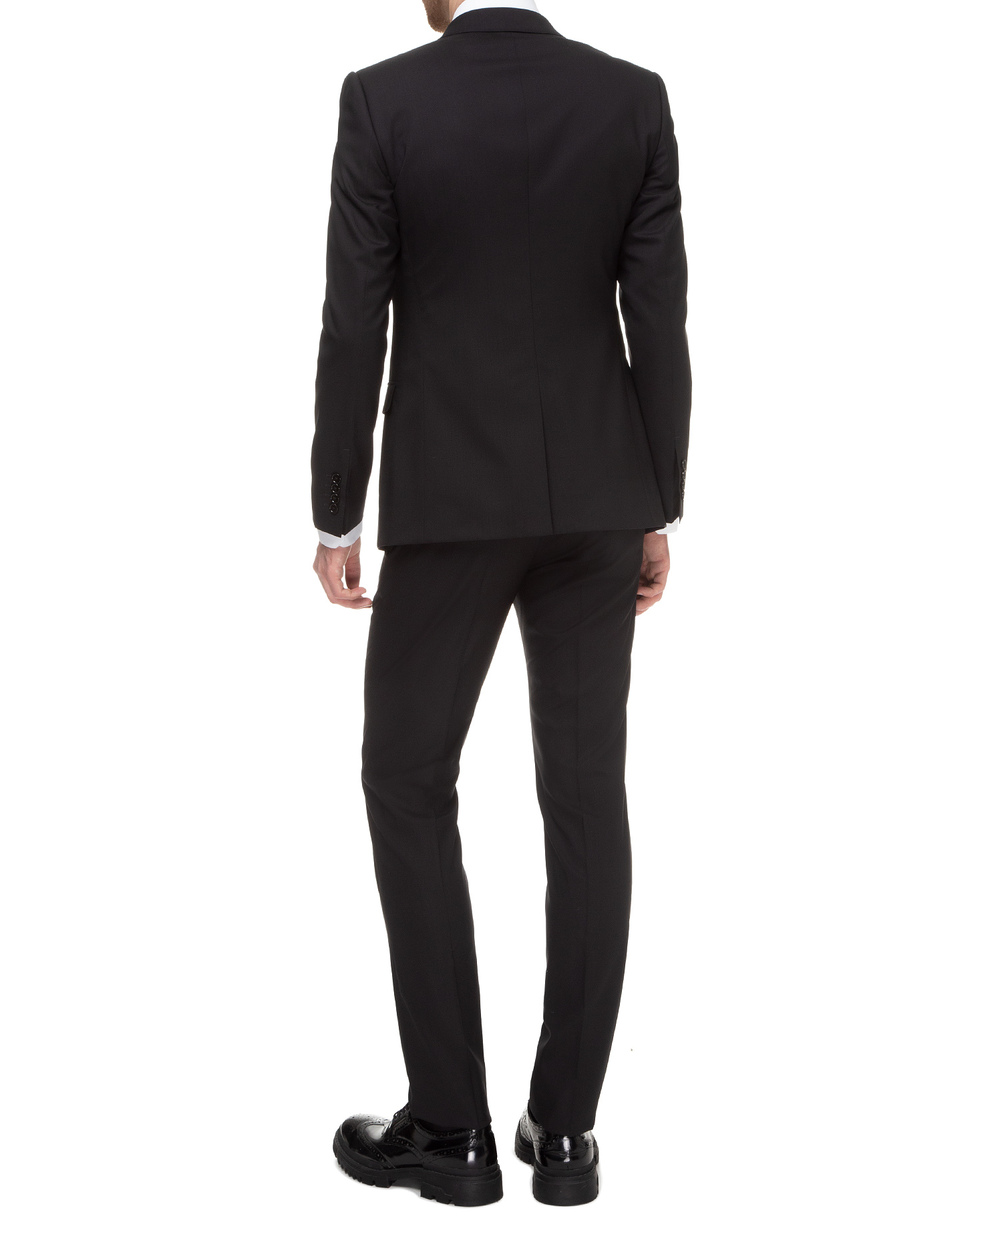 Шерстяной костюм Martini (пиджак, брюки) Dolce&Gabbana GK0RMT-FU3N7FW19, черный цвет • Купить в интернет-магазине Kameron